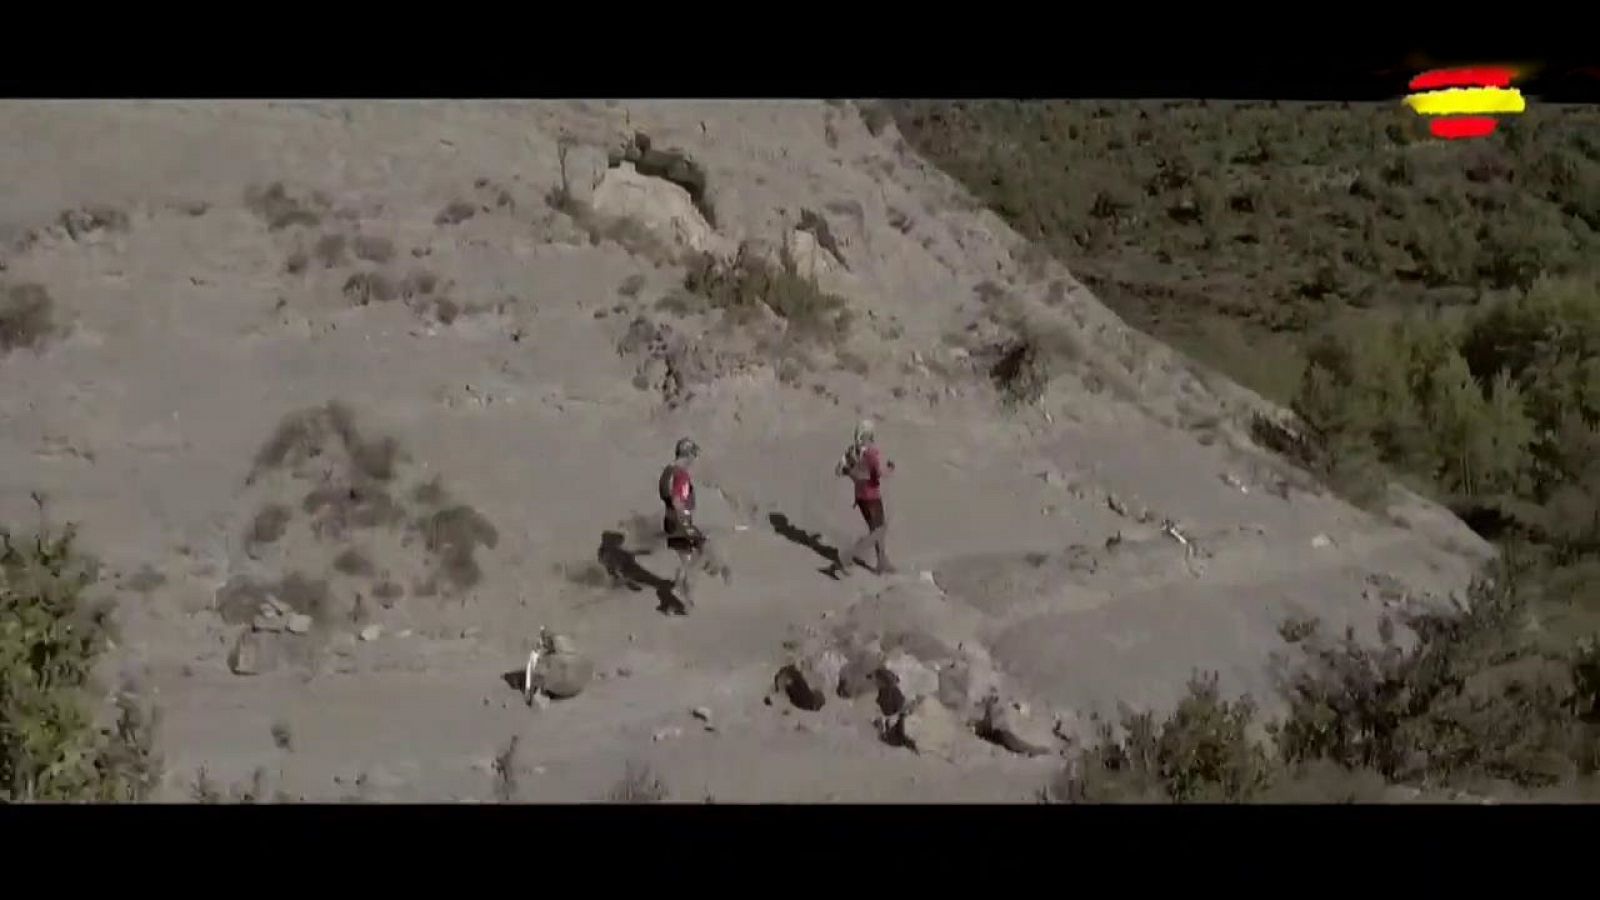 Trail - Circuito Challenge "La magia de los Pirineos" Ultratrail Guara-Somontano - RTVE.es